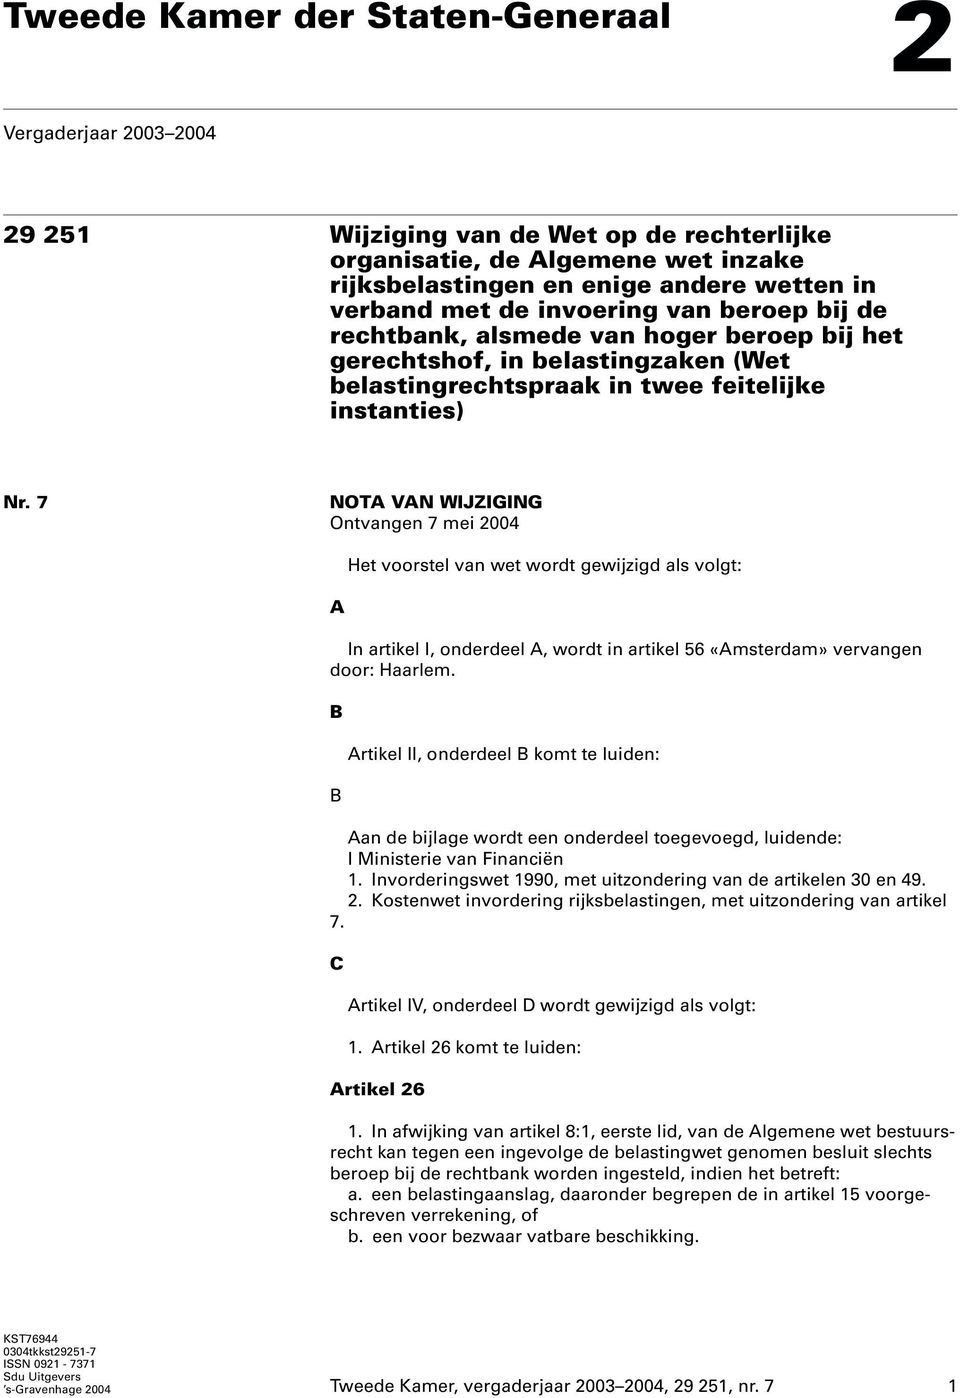 7 NOTA VAN WIJZIGING Ontvangen 7 mei 2004 Het voorstel van wet wordt gewijzigd als volgt: A In artikel I, onderdeel A, wordt in artikel 56 «Amsterdam» vervangen door: Haarlem.